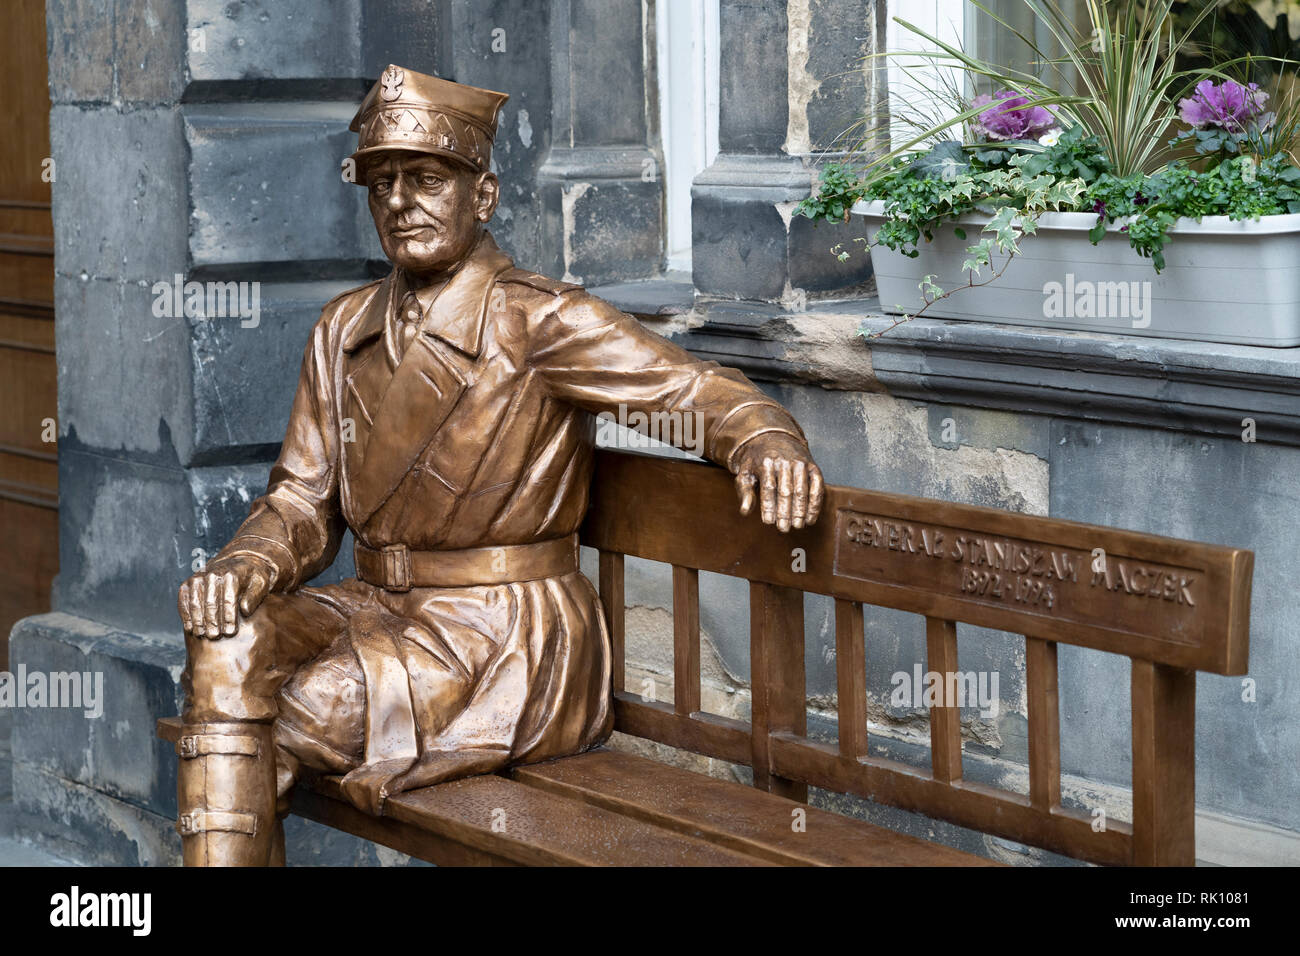 Statue von polnischen Krieg Held General Stanisław Maczek im City Chambers in der Altstadt von Edinburgh, Schottland, Großbritannien Stockfoto